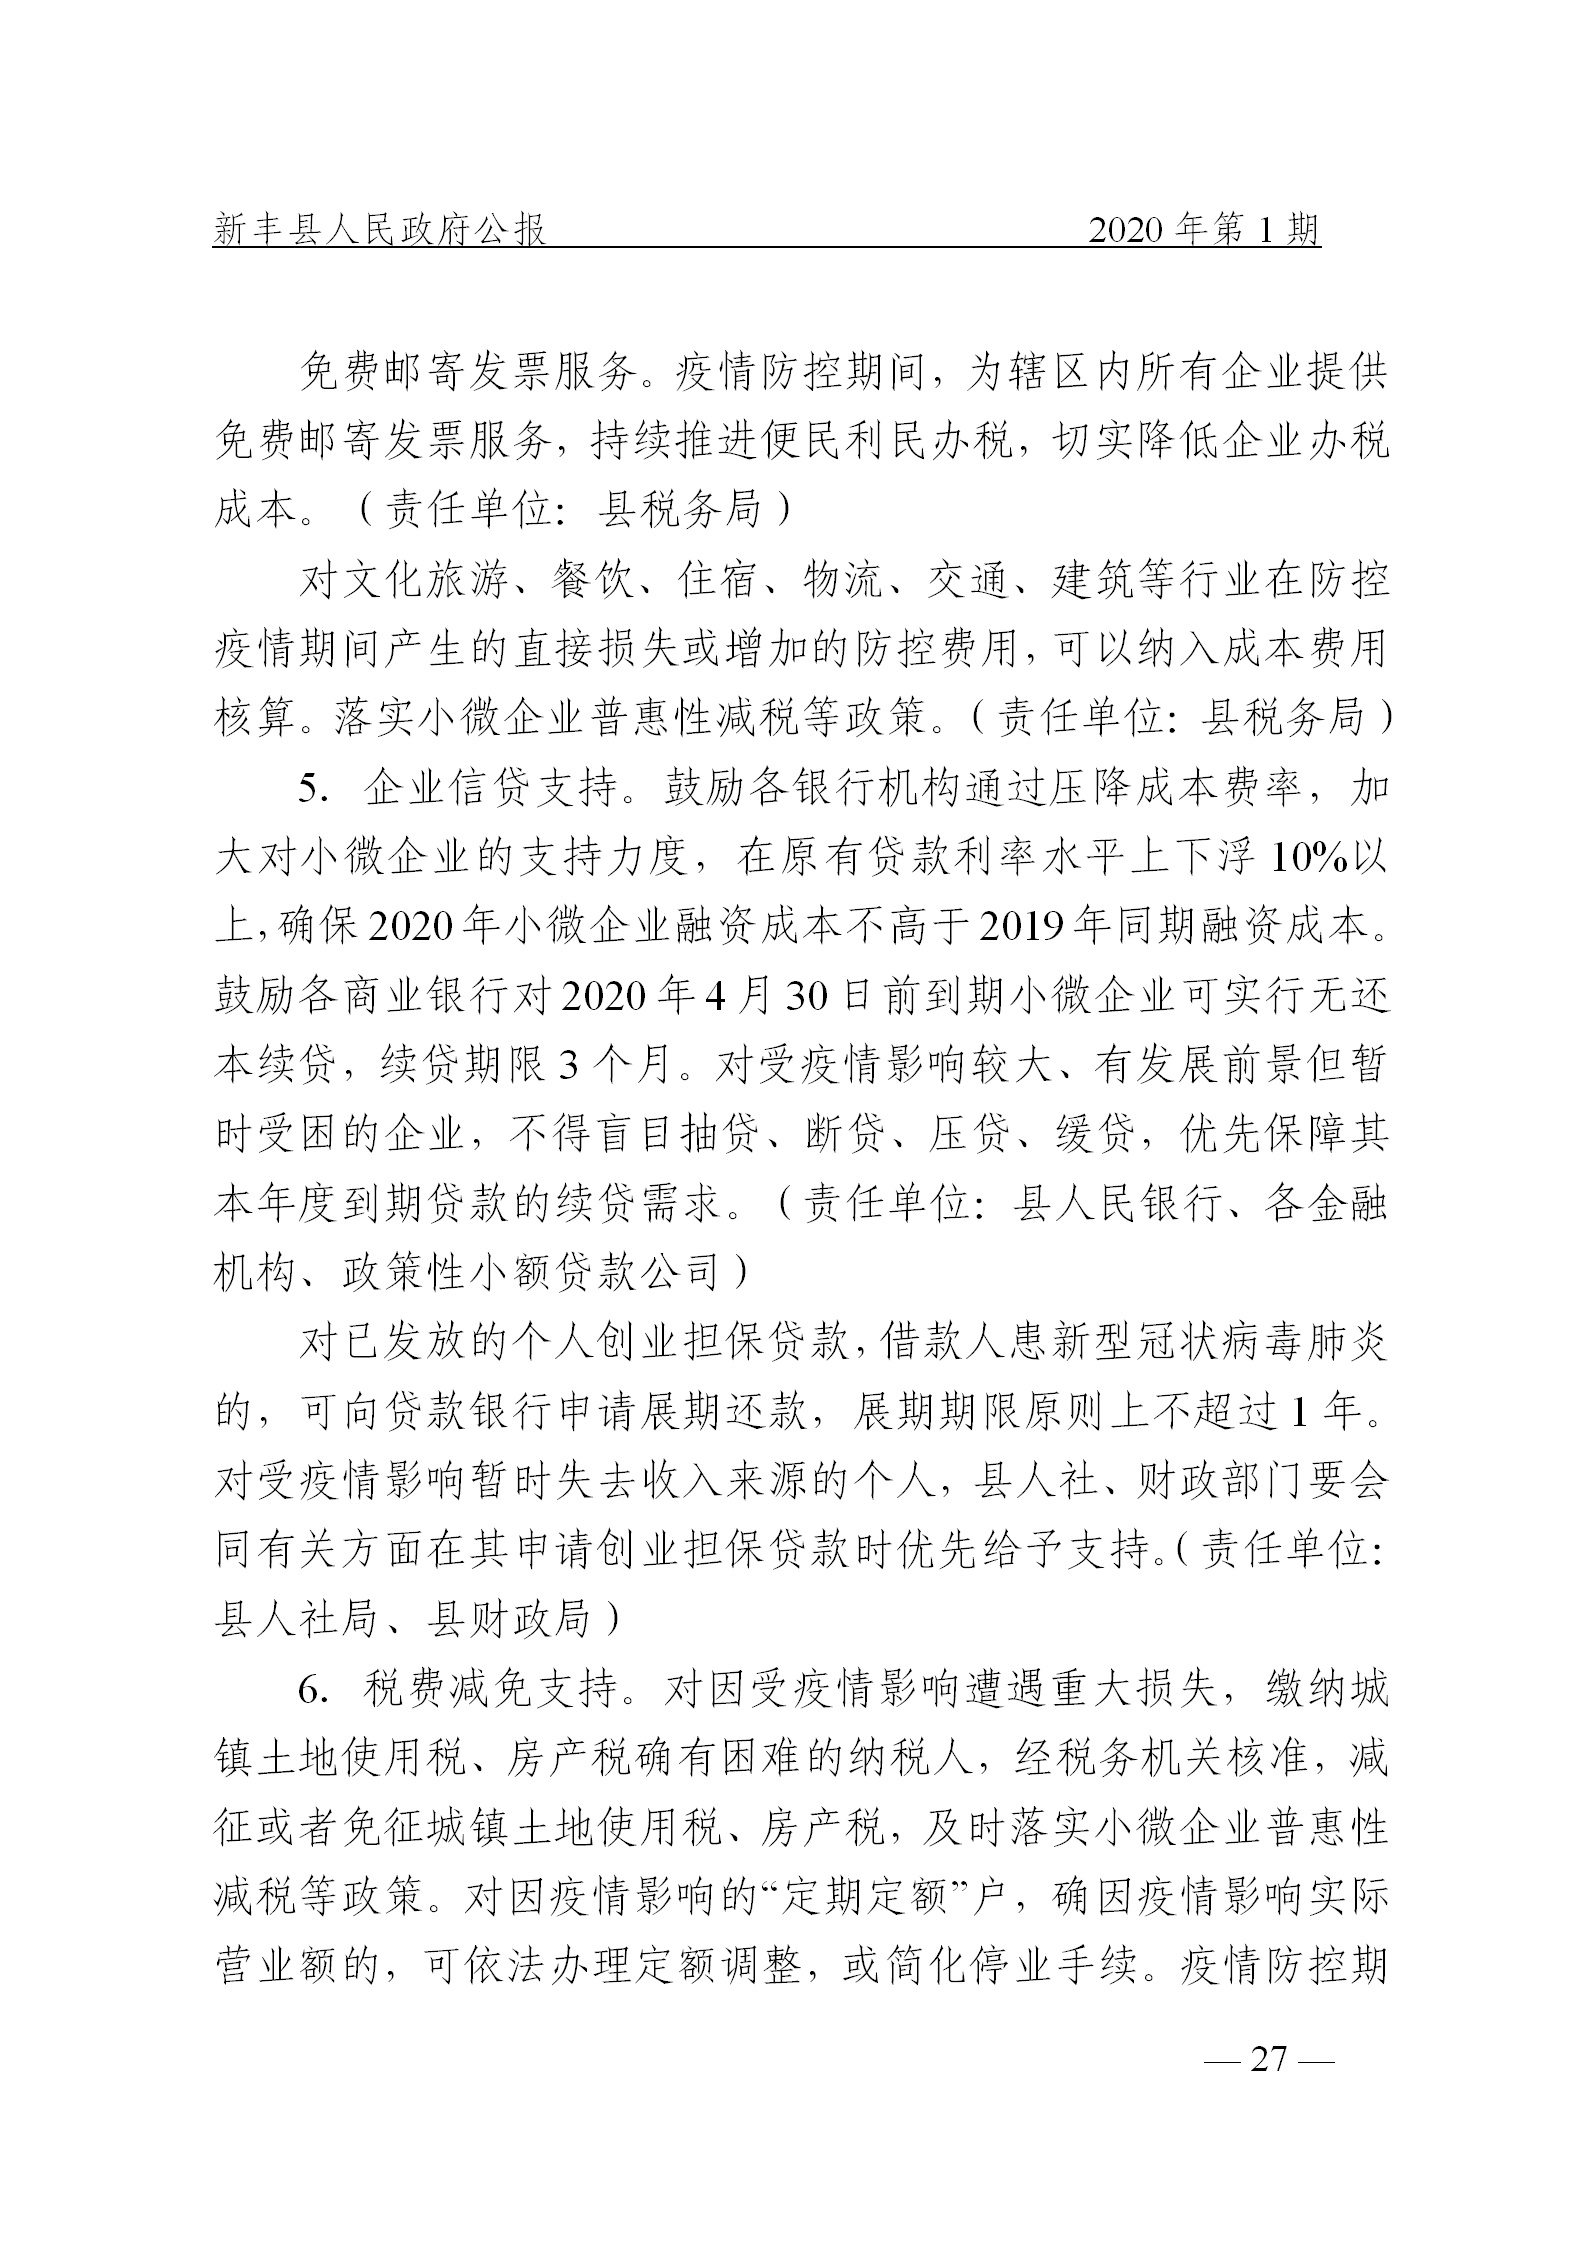 《新丰县人民政府公报》2020年第1期(1)_27.png